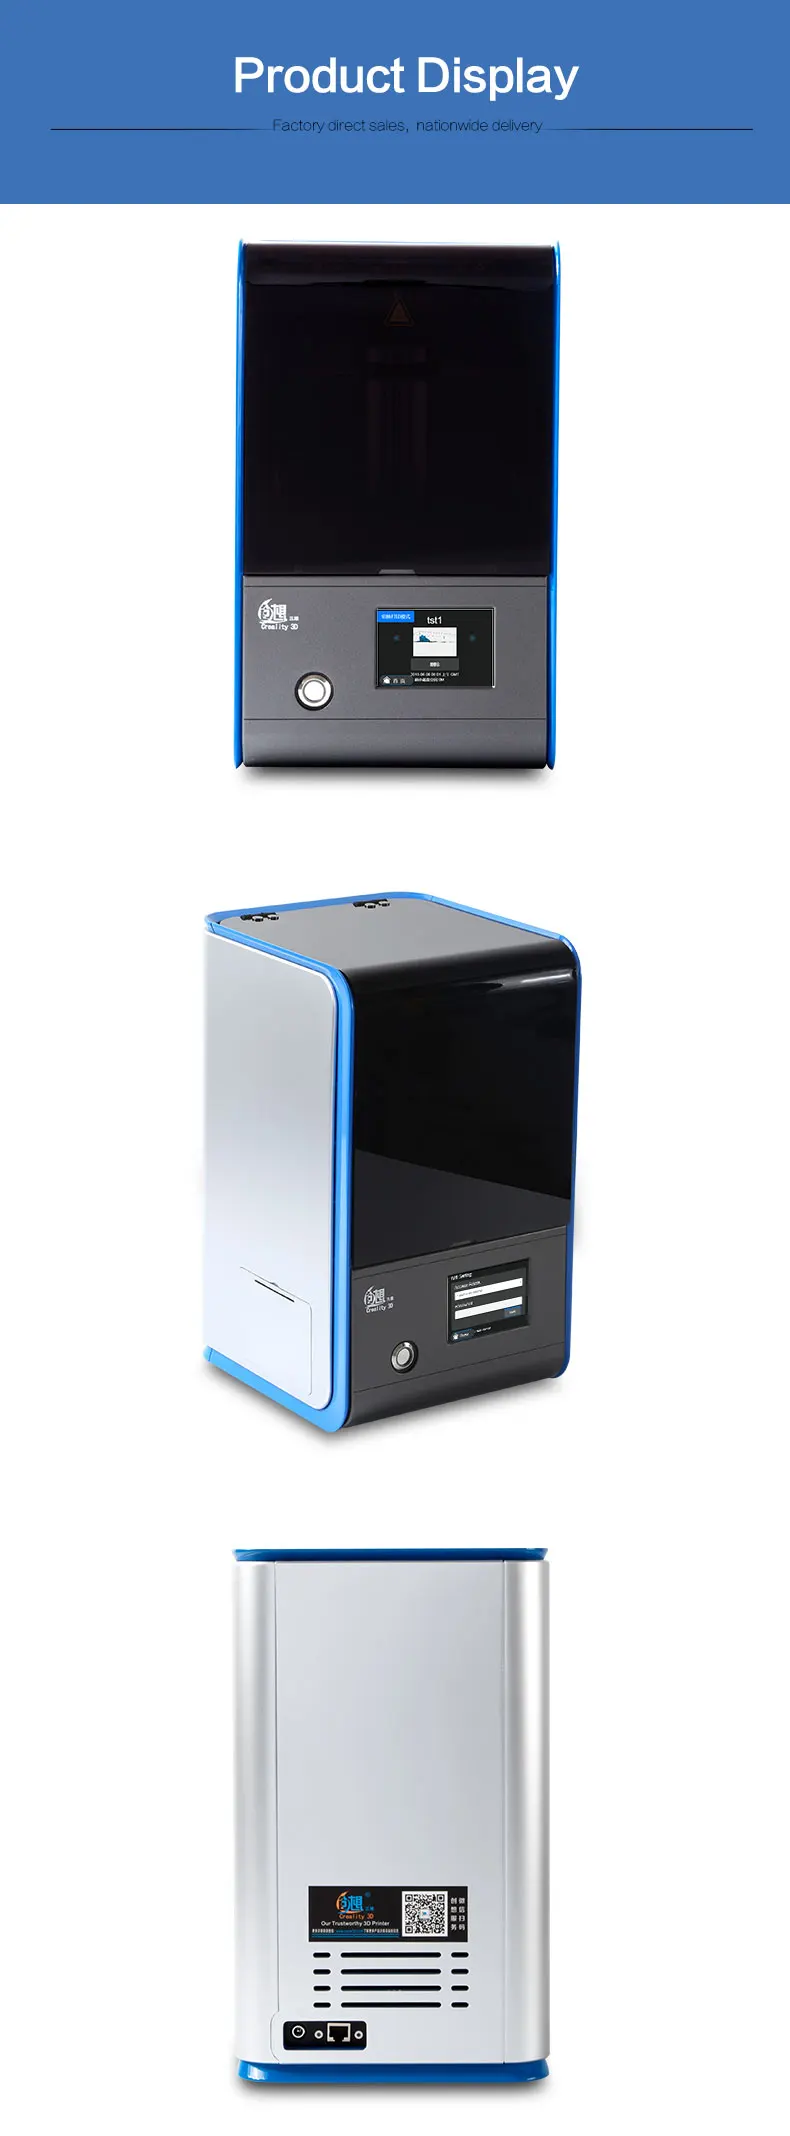 Creality Photon UV lcd 3d принтер, собранный инновационный с автономным объемом печати 120-70-120мм для ювелирных изделий, стоматологических, дизайнерских